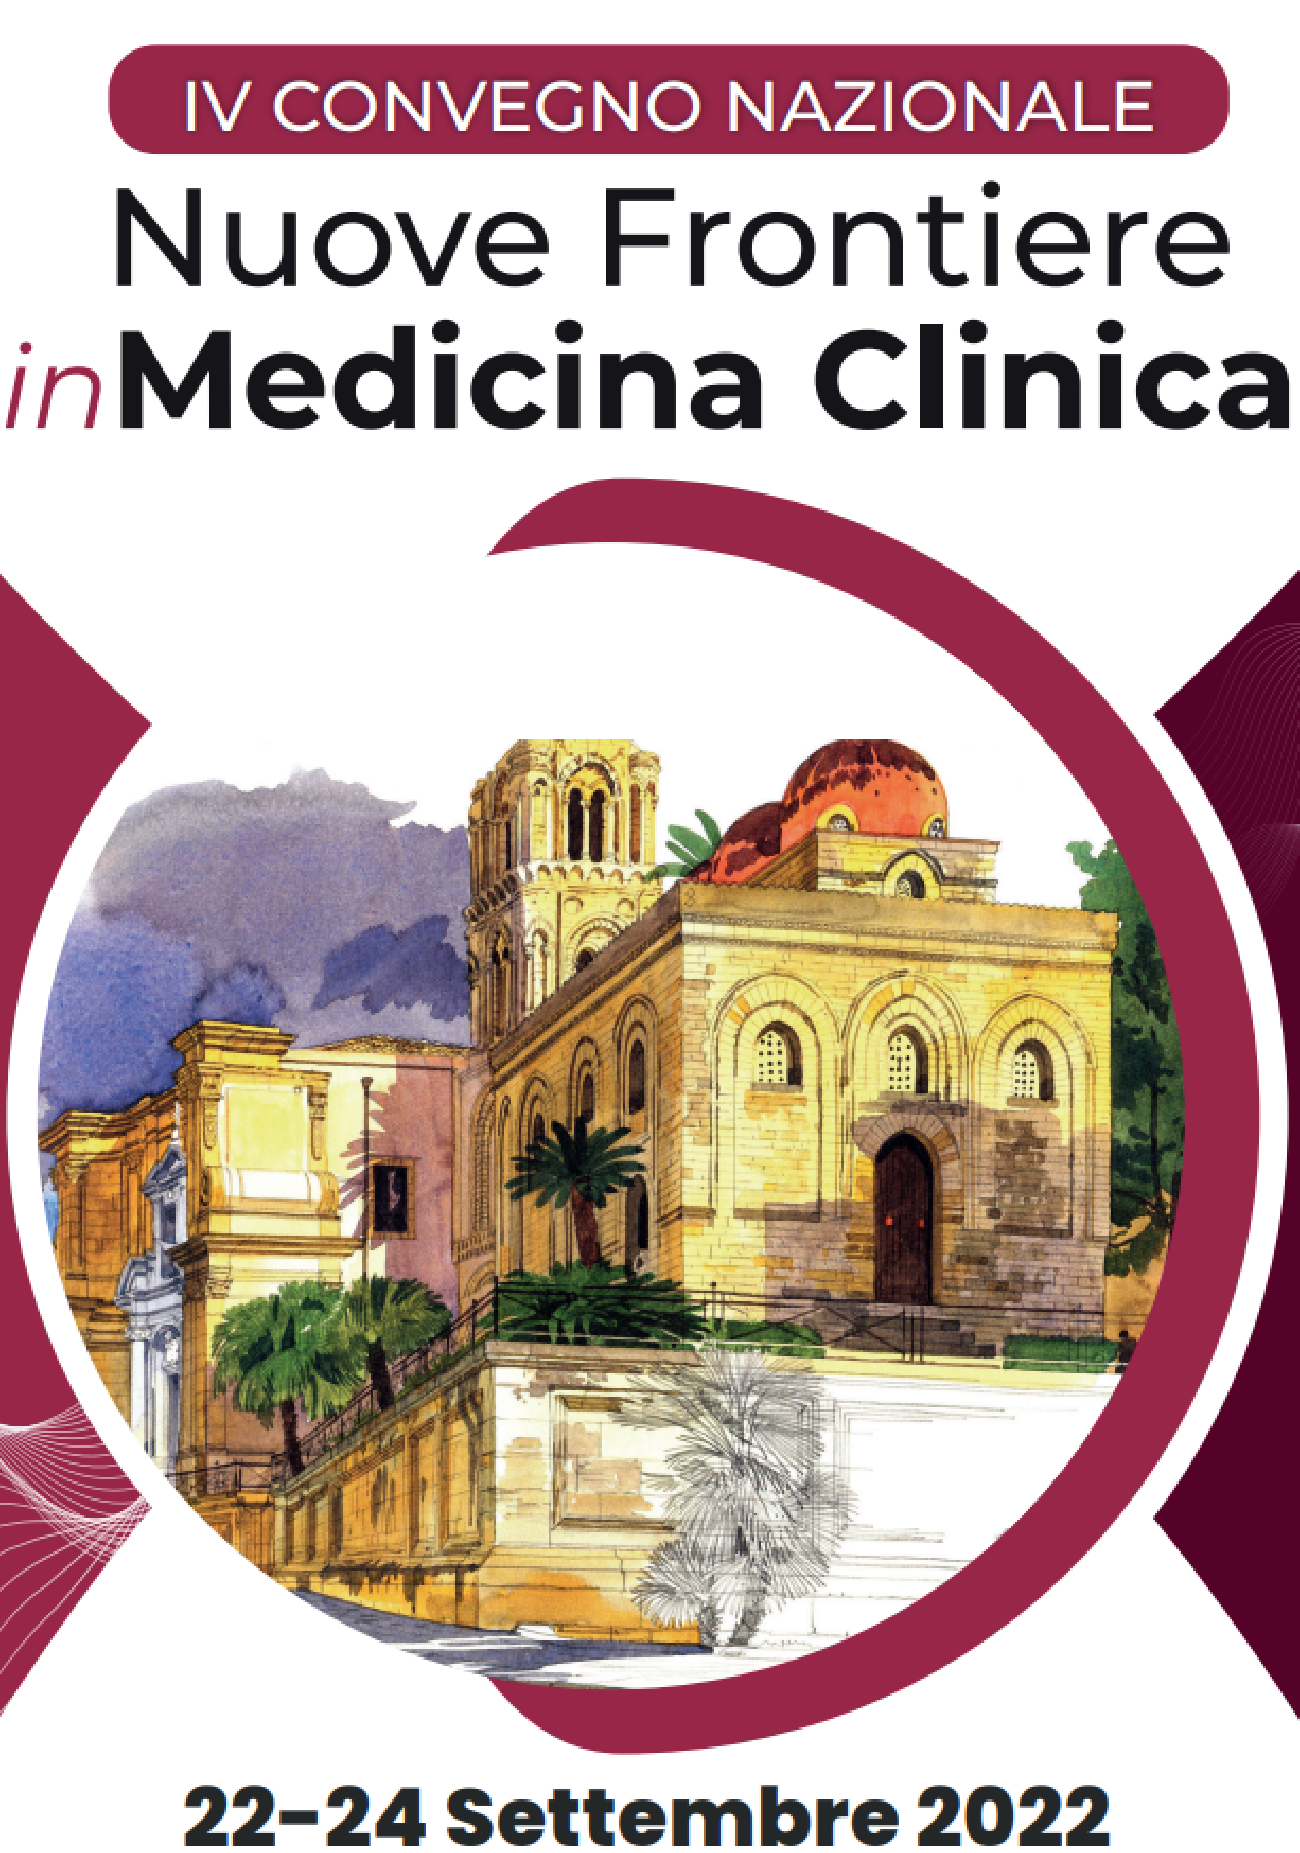 IV Convegno Nazionale - Nuove Frontiere in Medicina Clinica